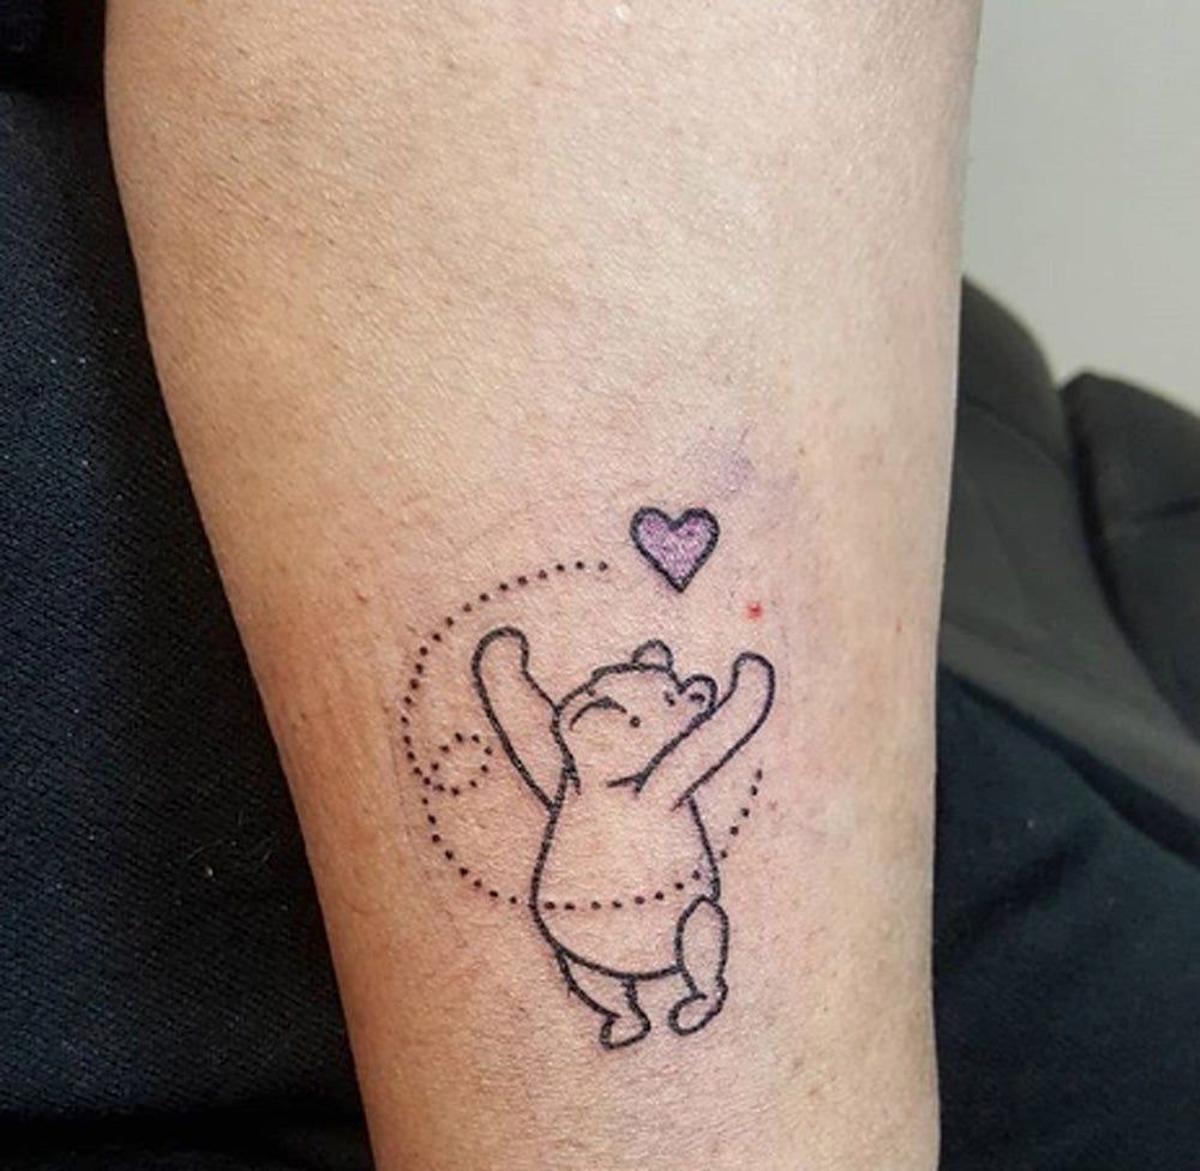 Tatuajes Disney: Winnie the Pooh